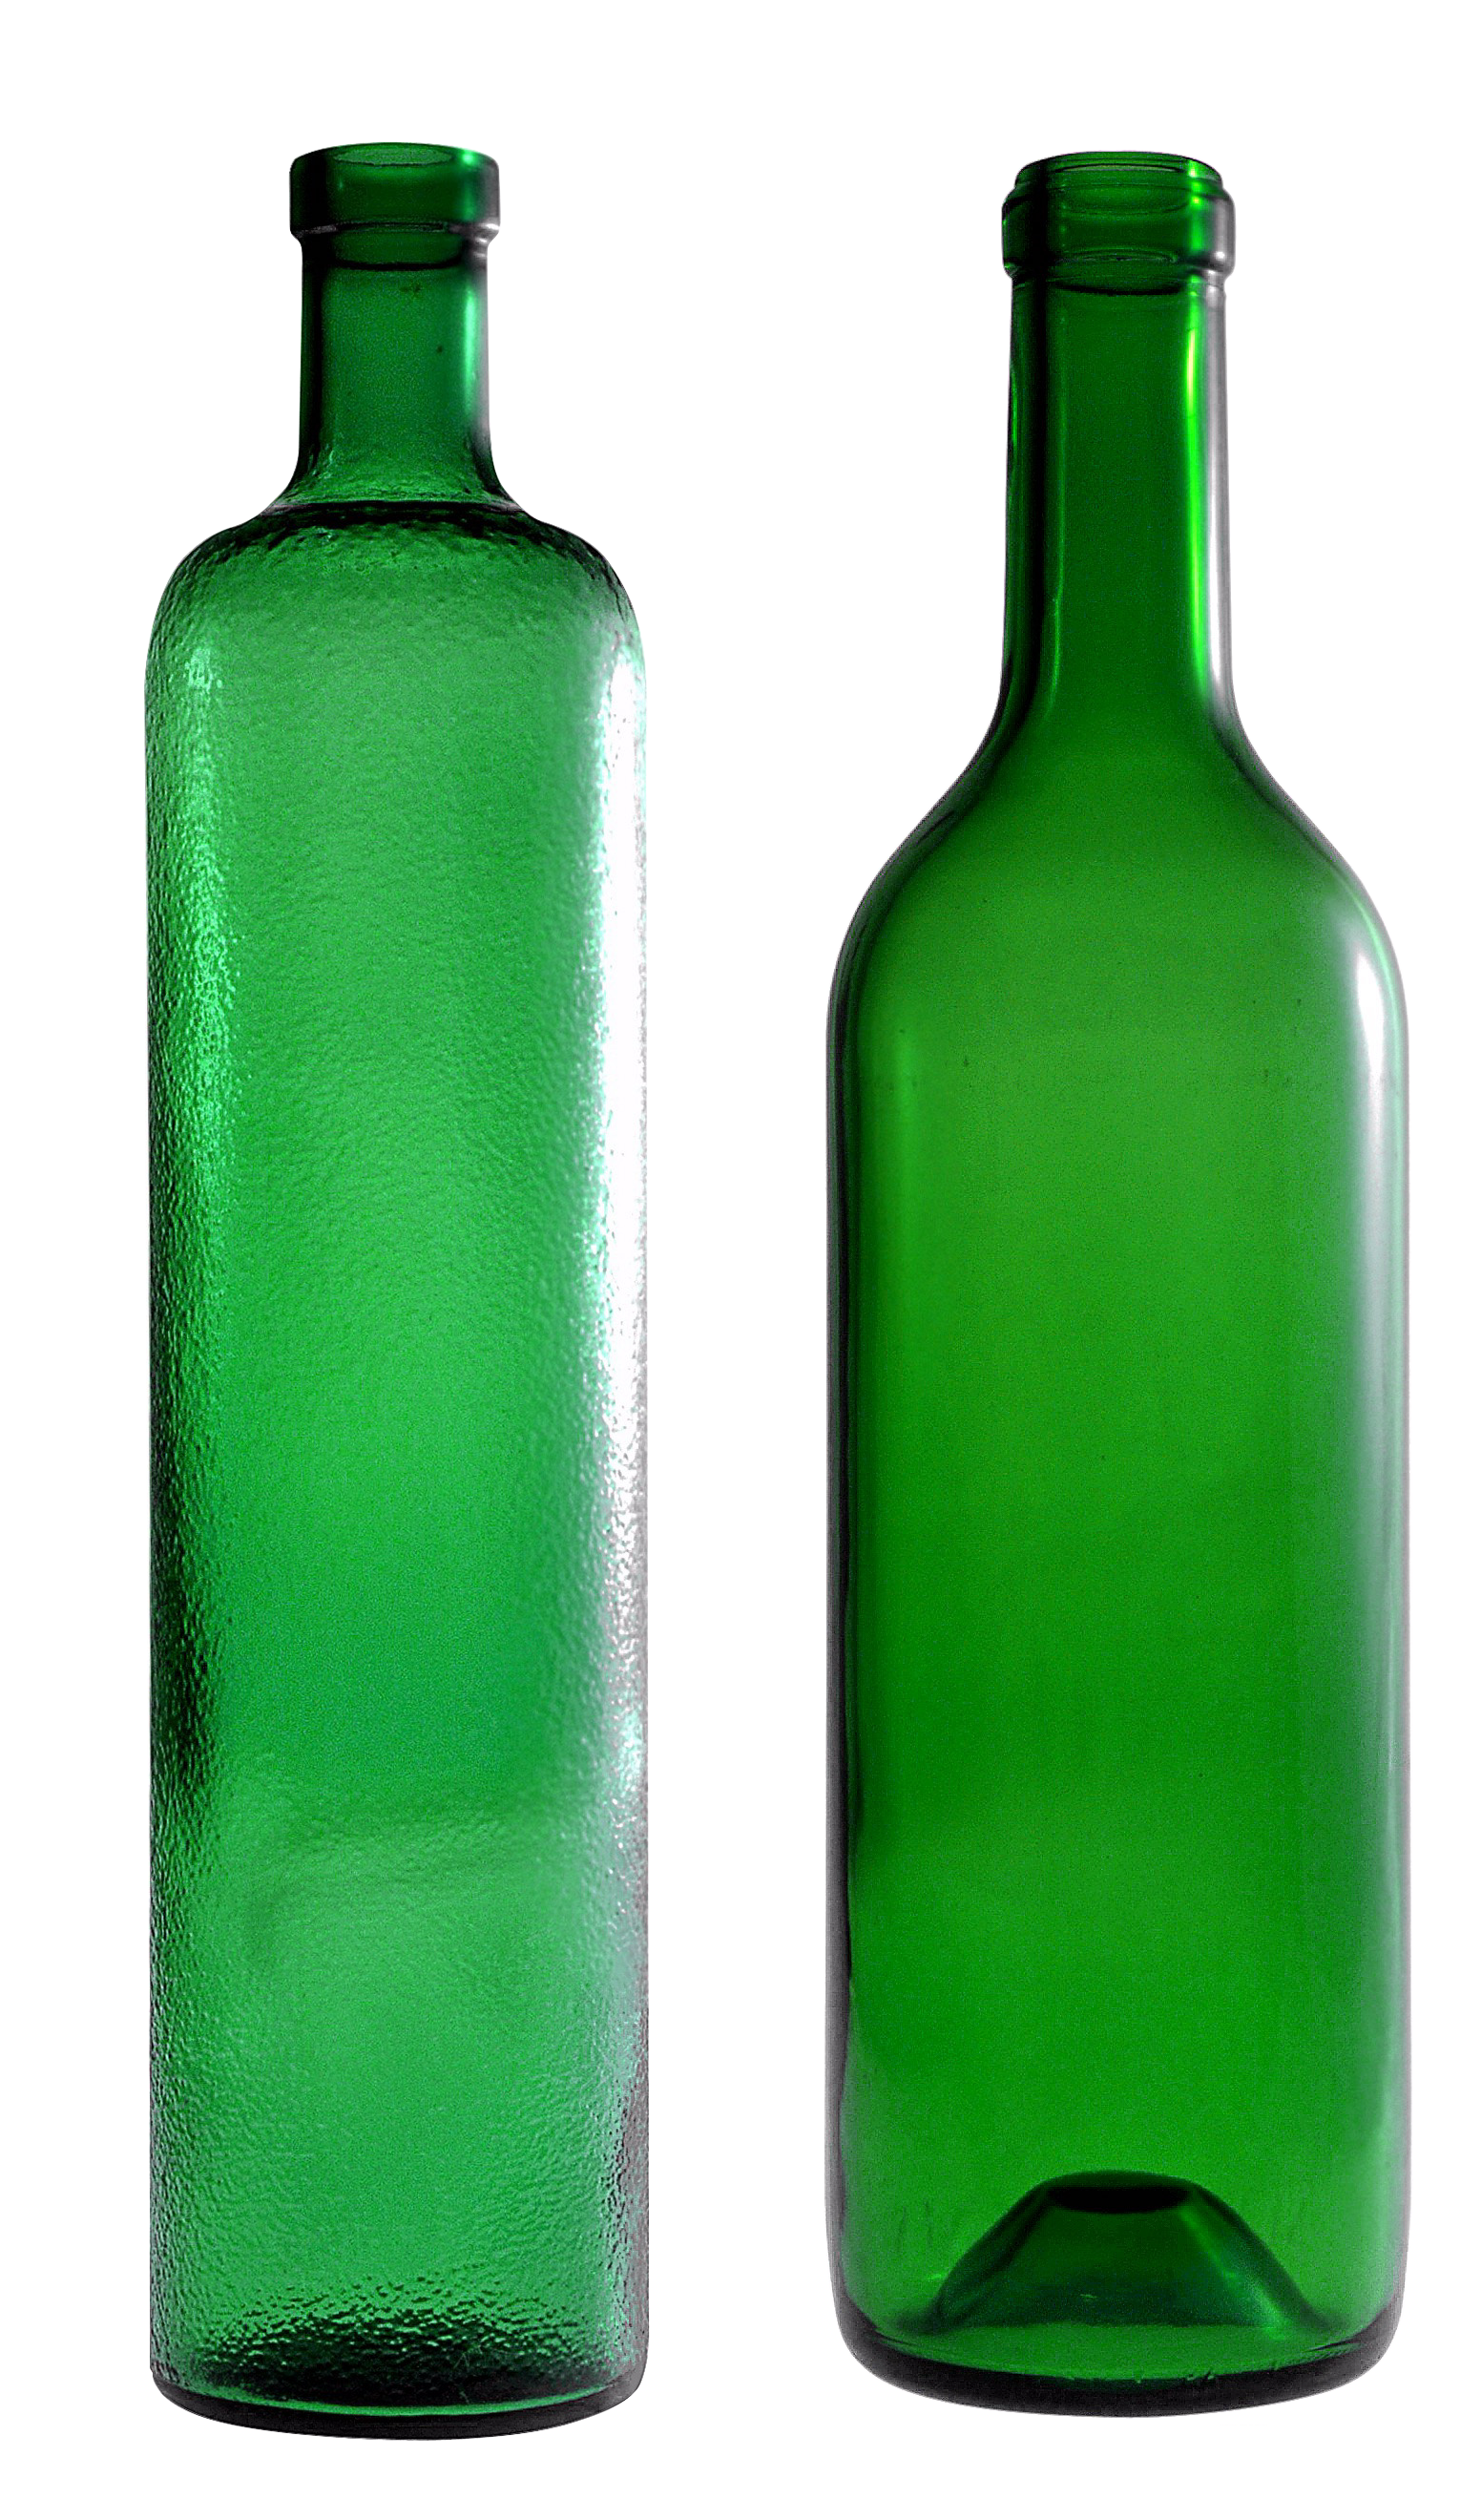 ขวดแก้วเปล่าสีเขียว